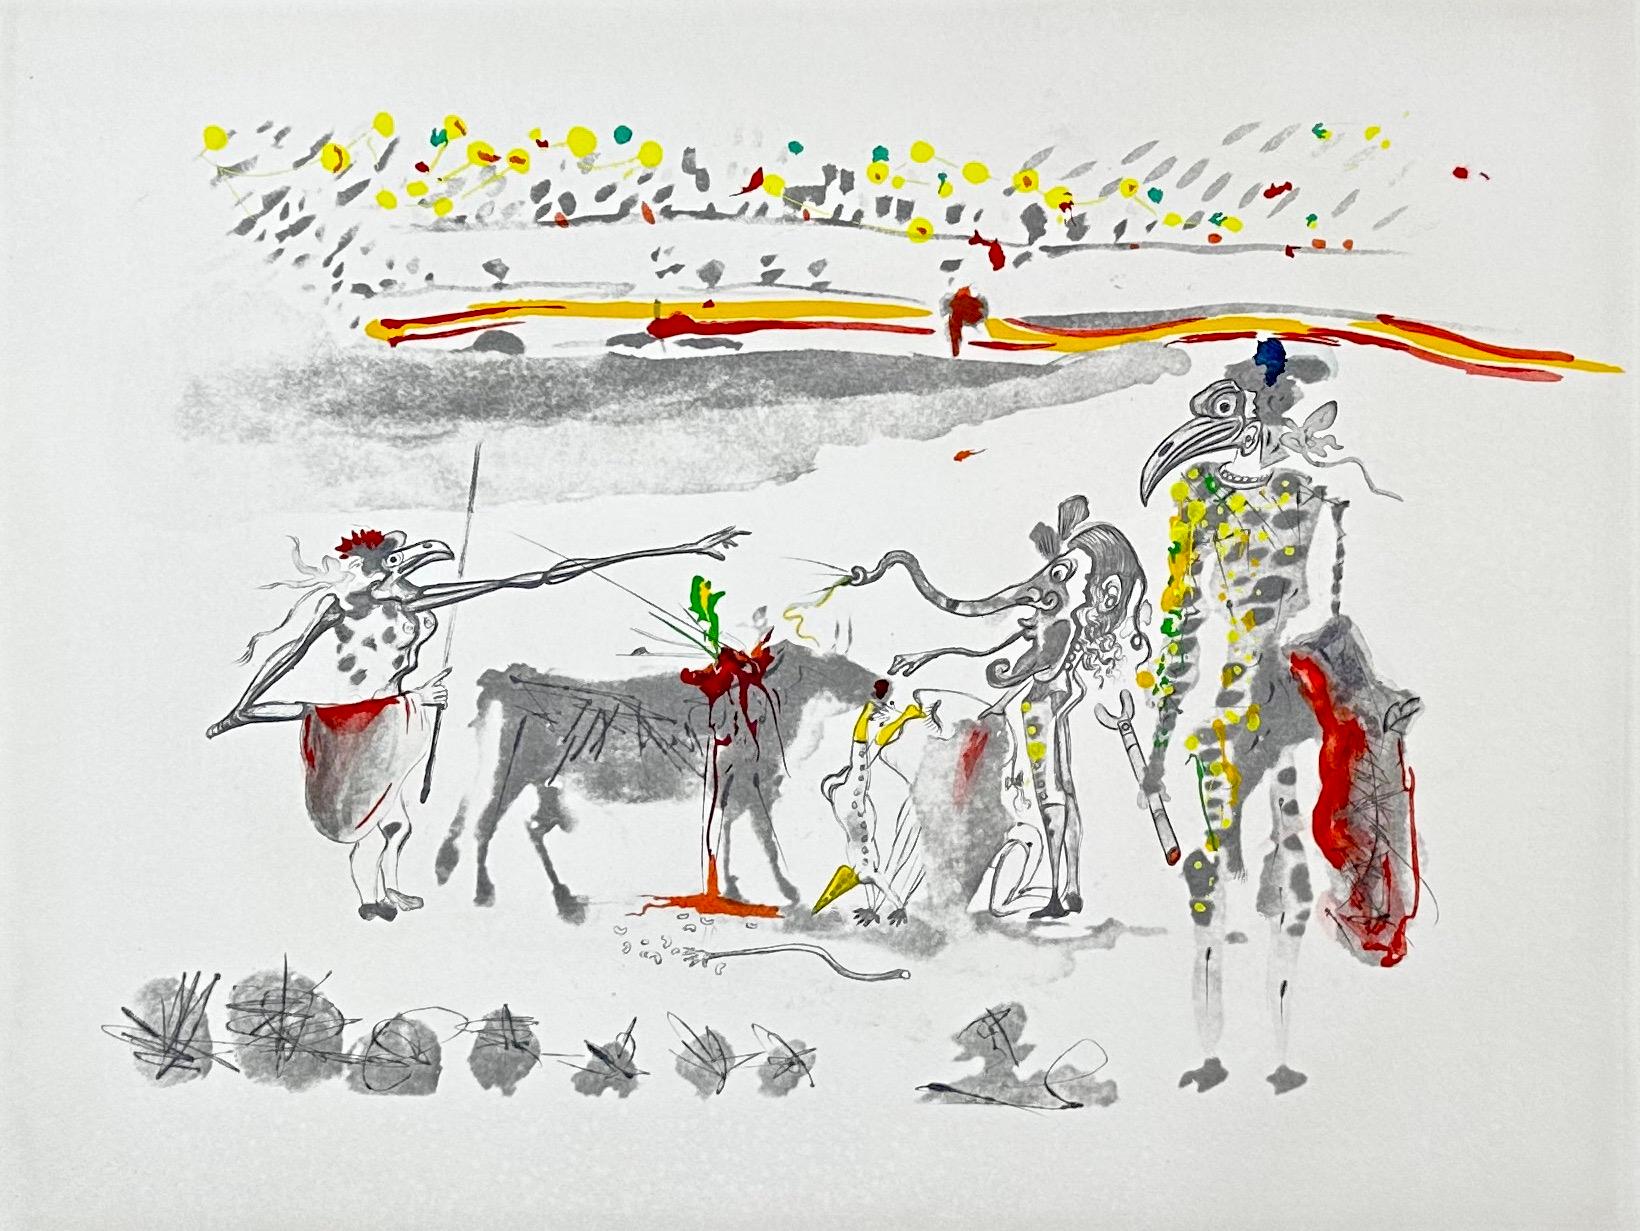 Tauramachie Surrealiste The Parrots  - Print by Salvador Dalí